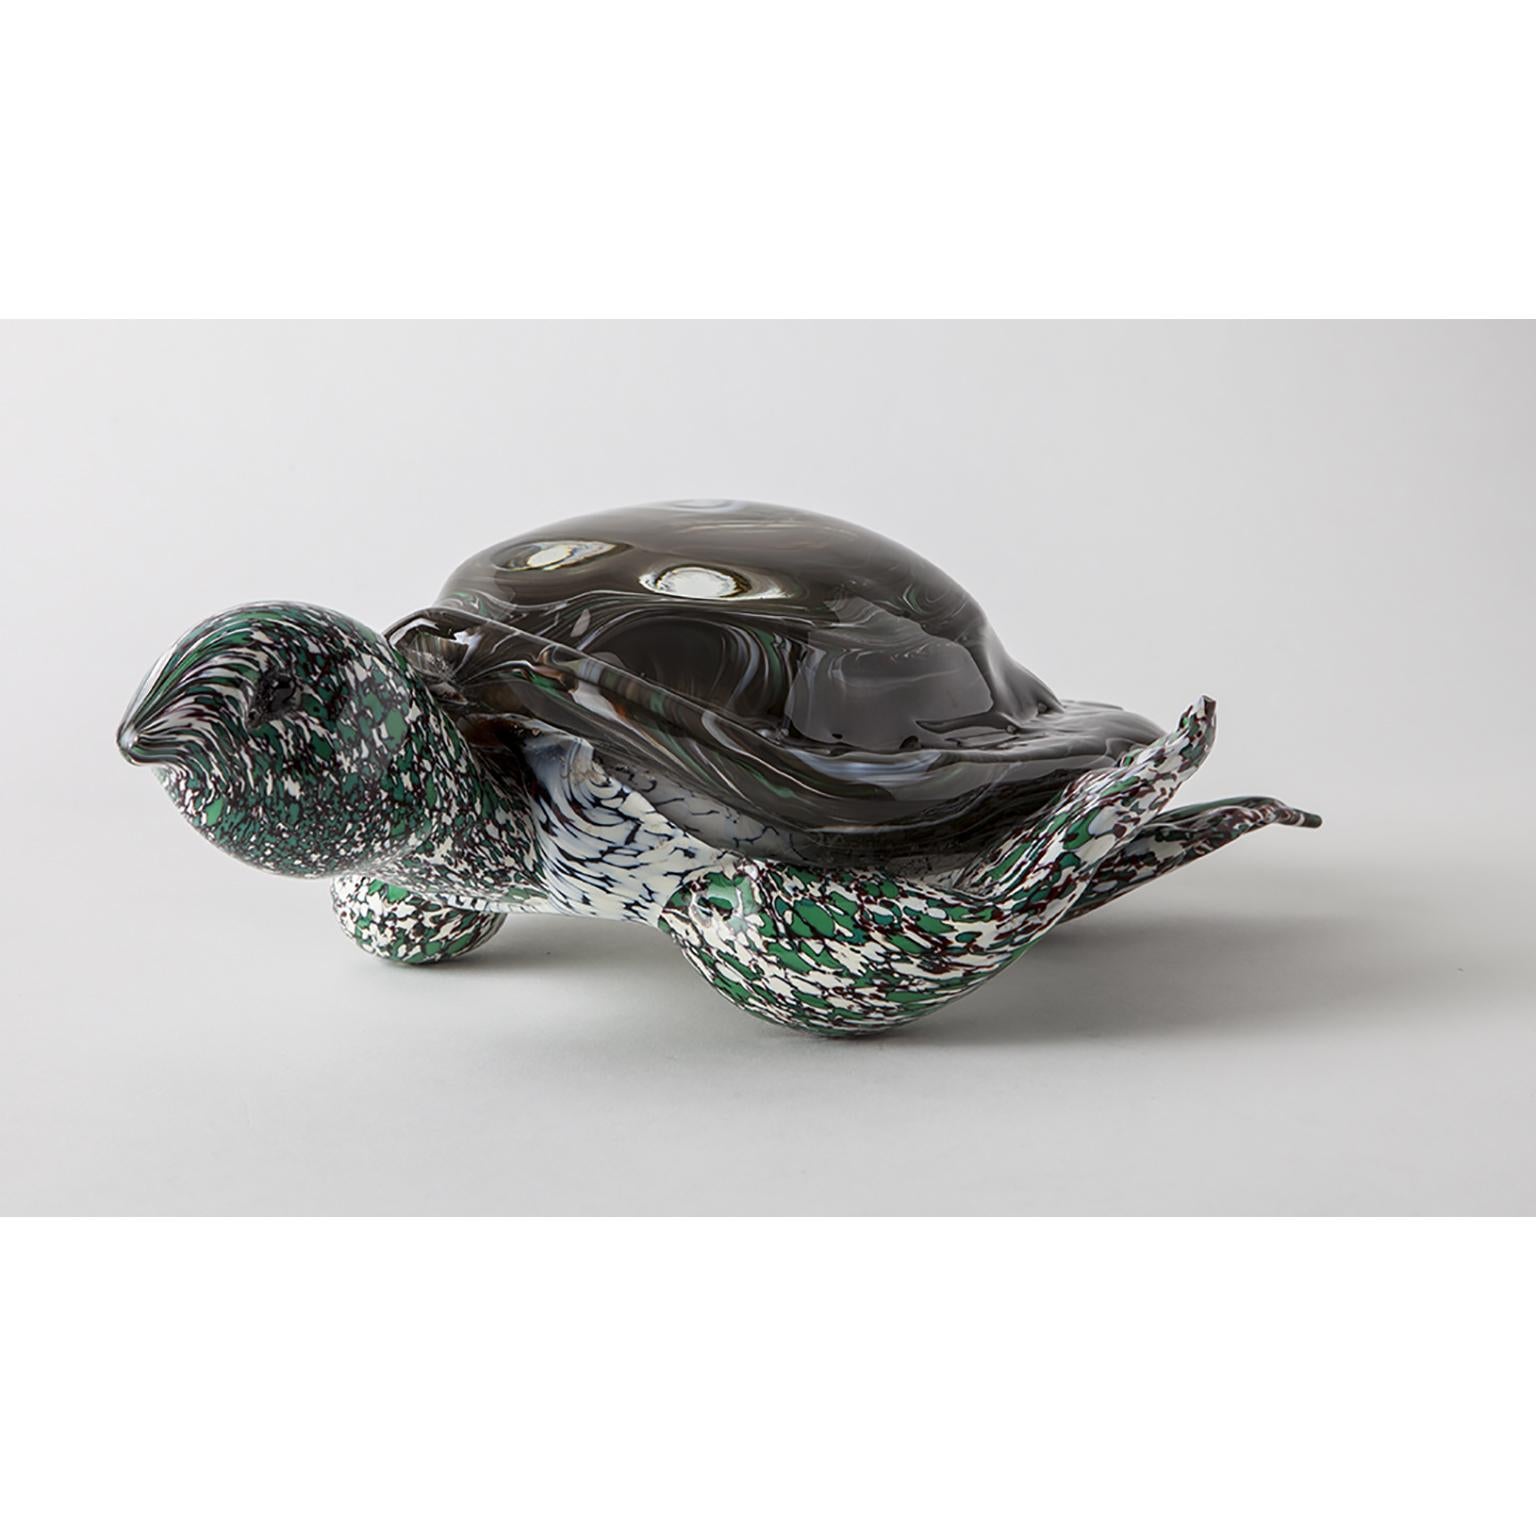 Plongez dans la beauté de notre sculpture artistique moderne de tortue aquatique, entièrement réalisée à la main avec précision dans un authentique verre de Murano. Chaque détail exquis est minutieusement réalisé par des artisans qualifiés,